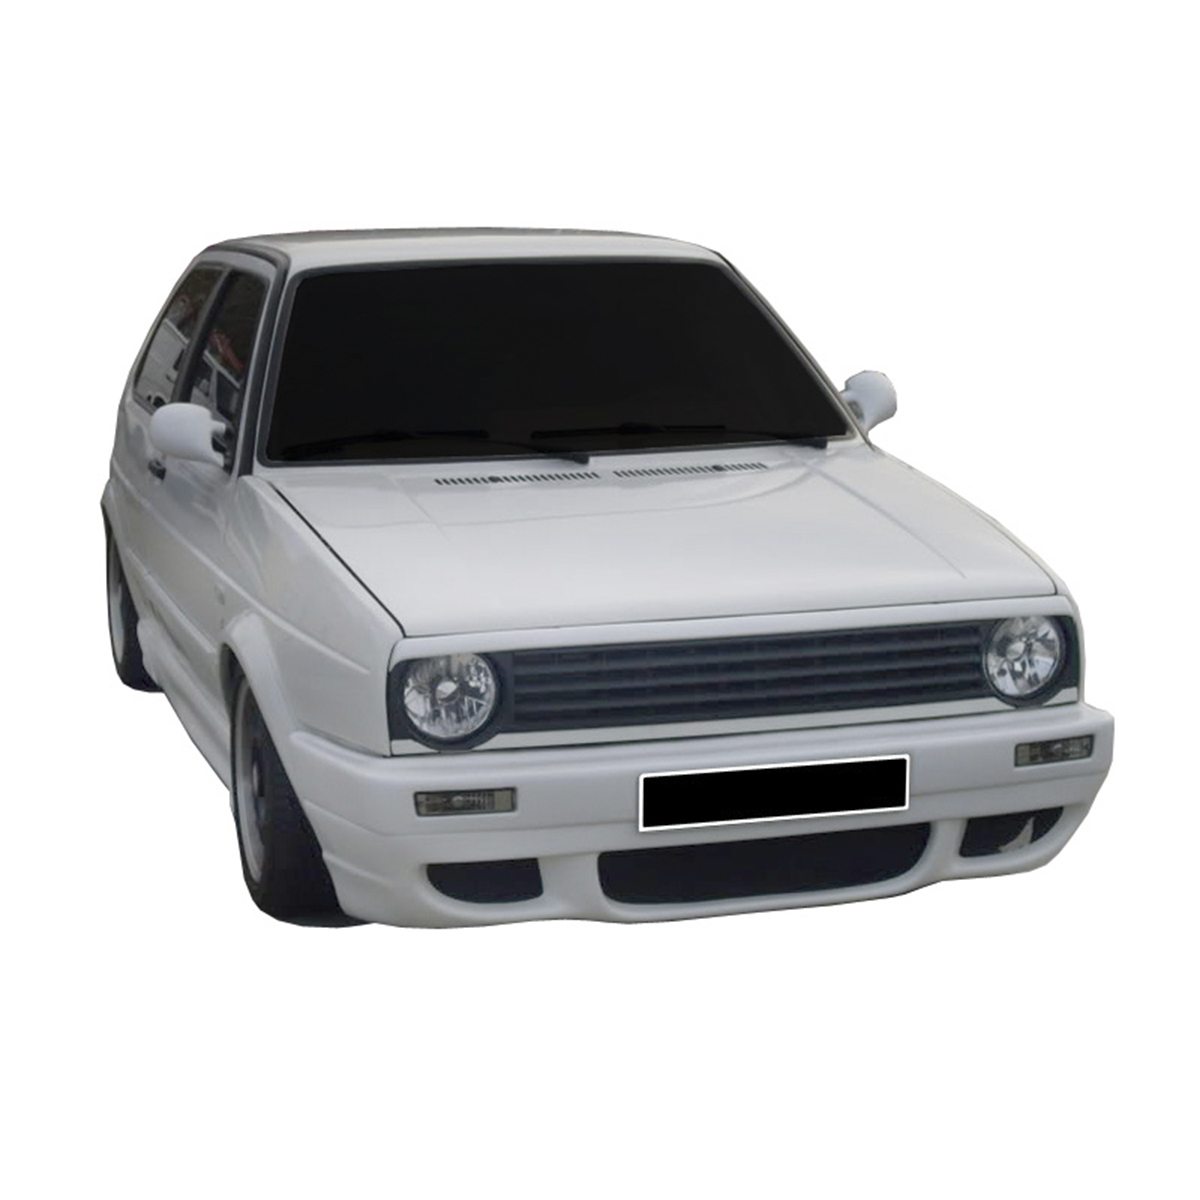 VW-Golf-II-RS-Frt-PCN115